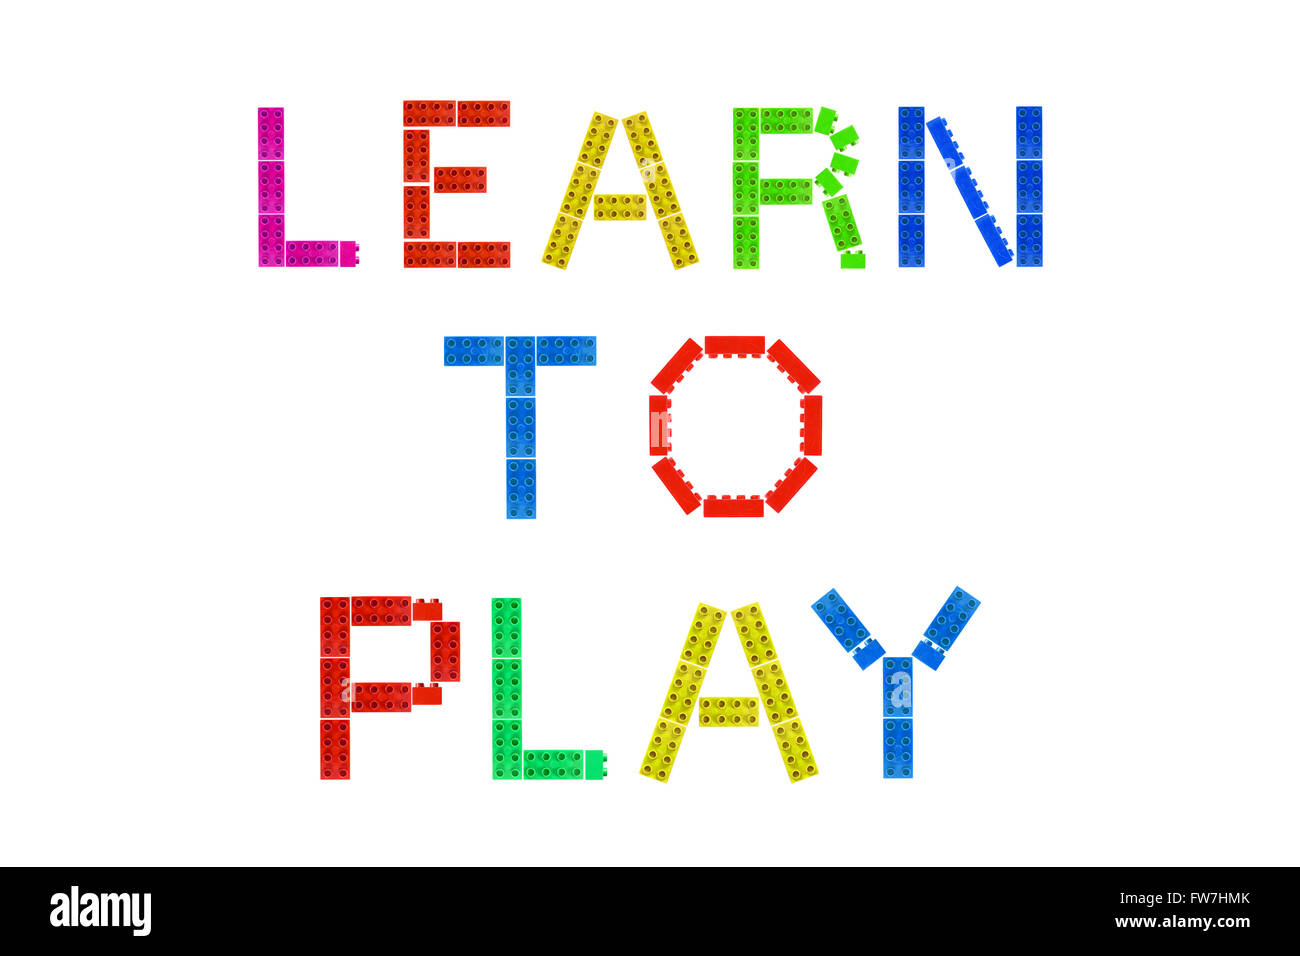 Apprendre à jouer créé à partir de morceaux de Lego photographié sur un fond blanc. Banque D'Images